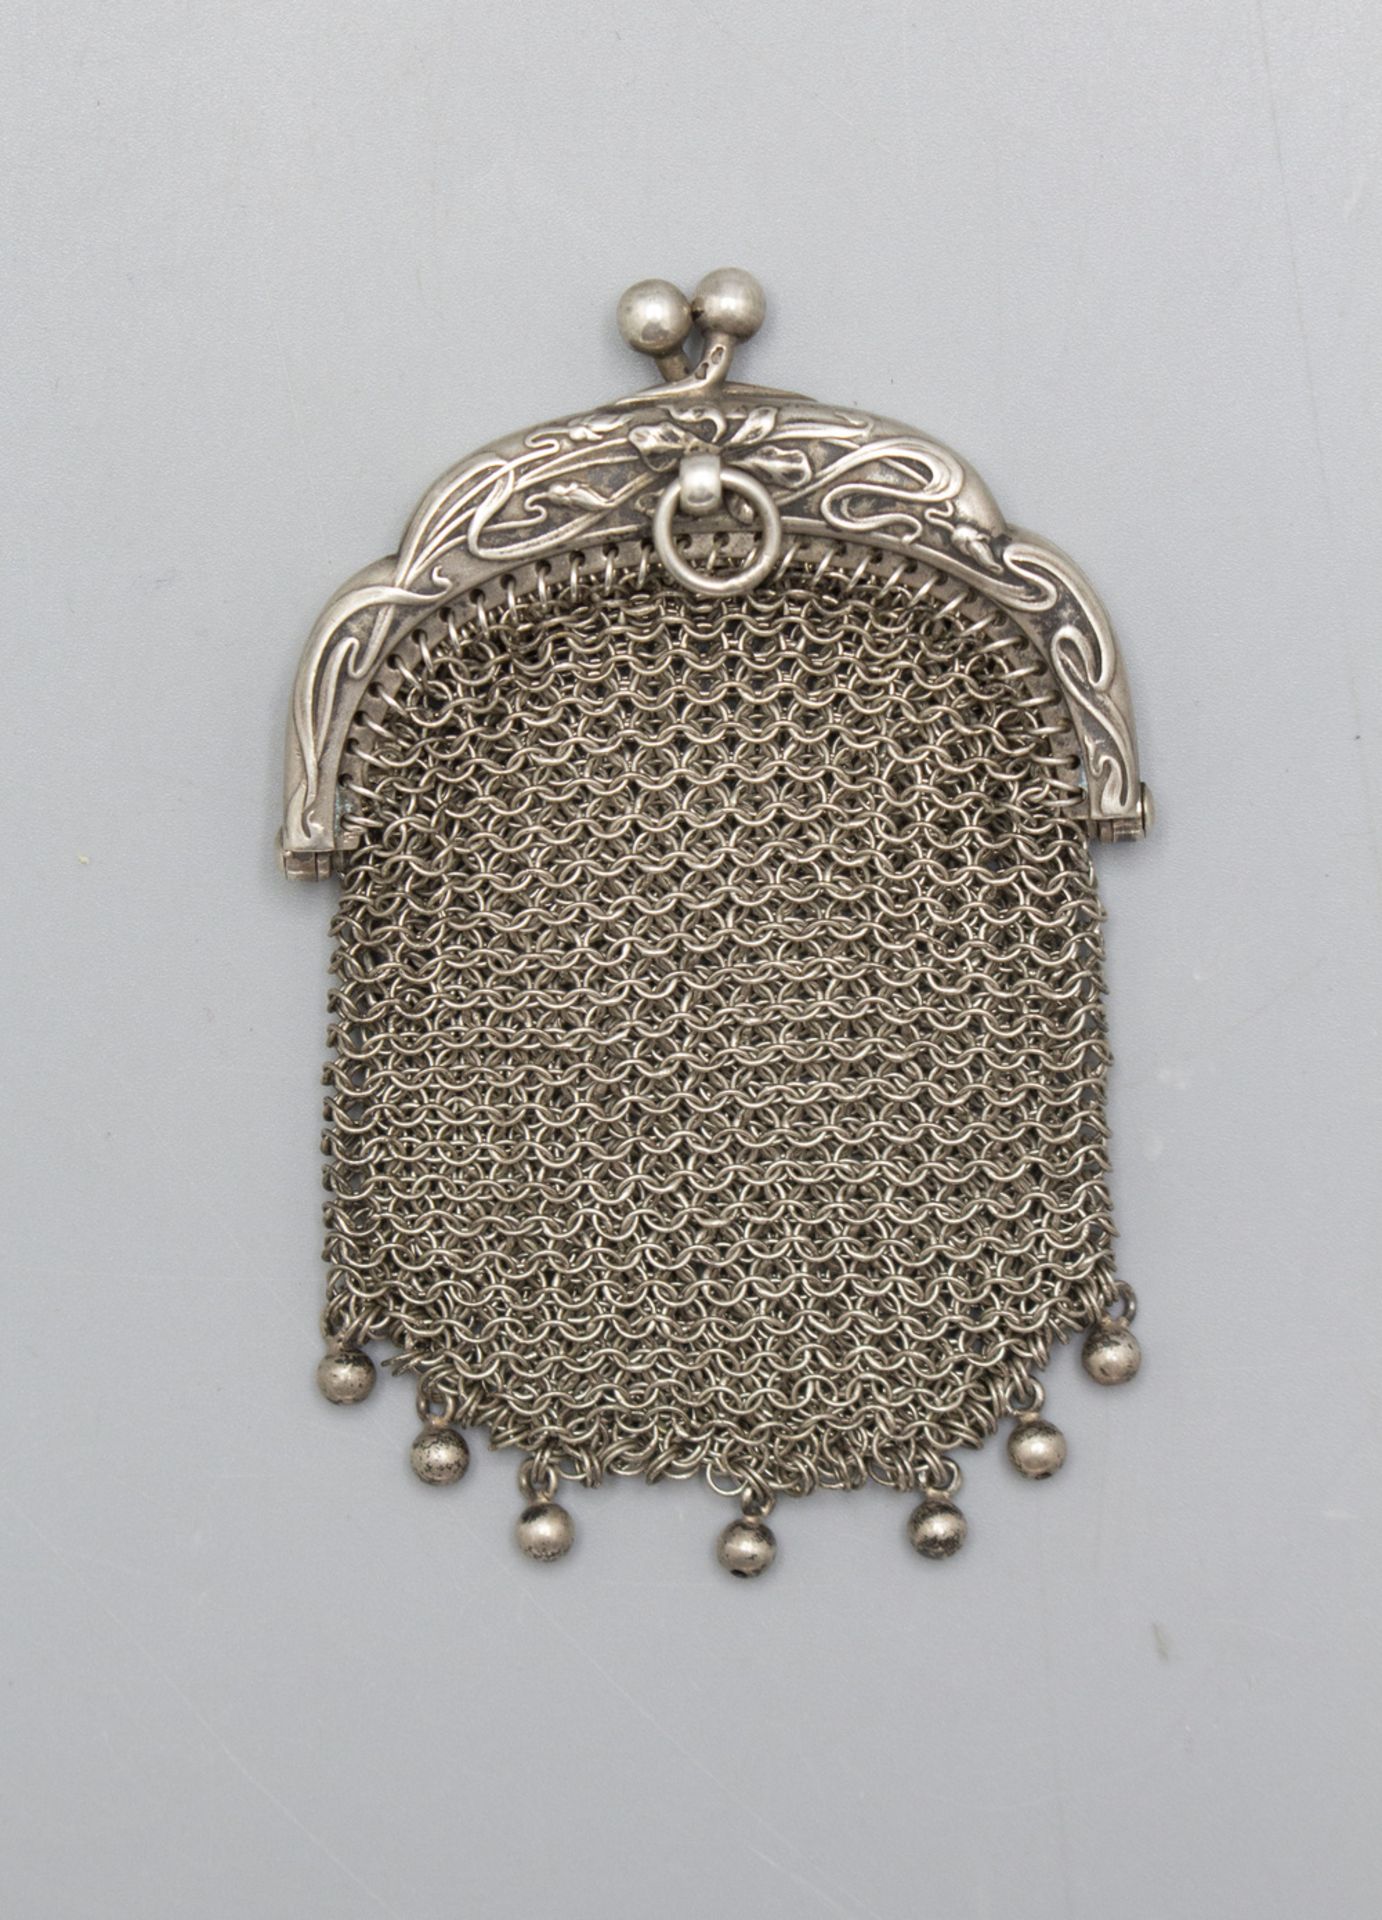 Kleine Jugendstil Kettentasche mit Schwertlilien / Börse / A small Art Nouveau silver purse ... - Image 2 of 3